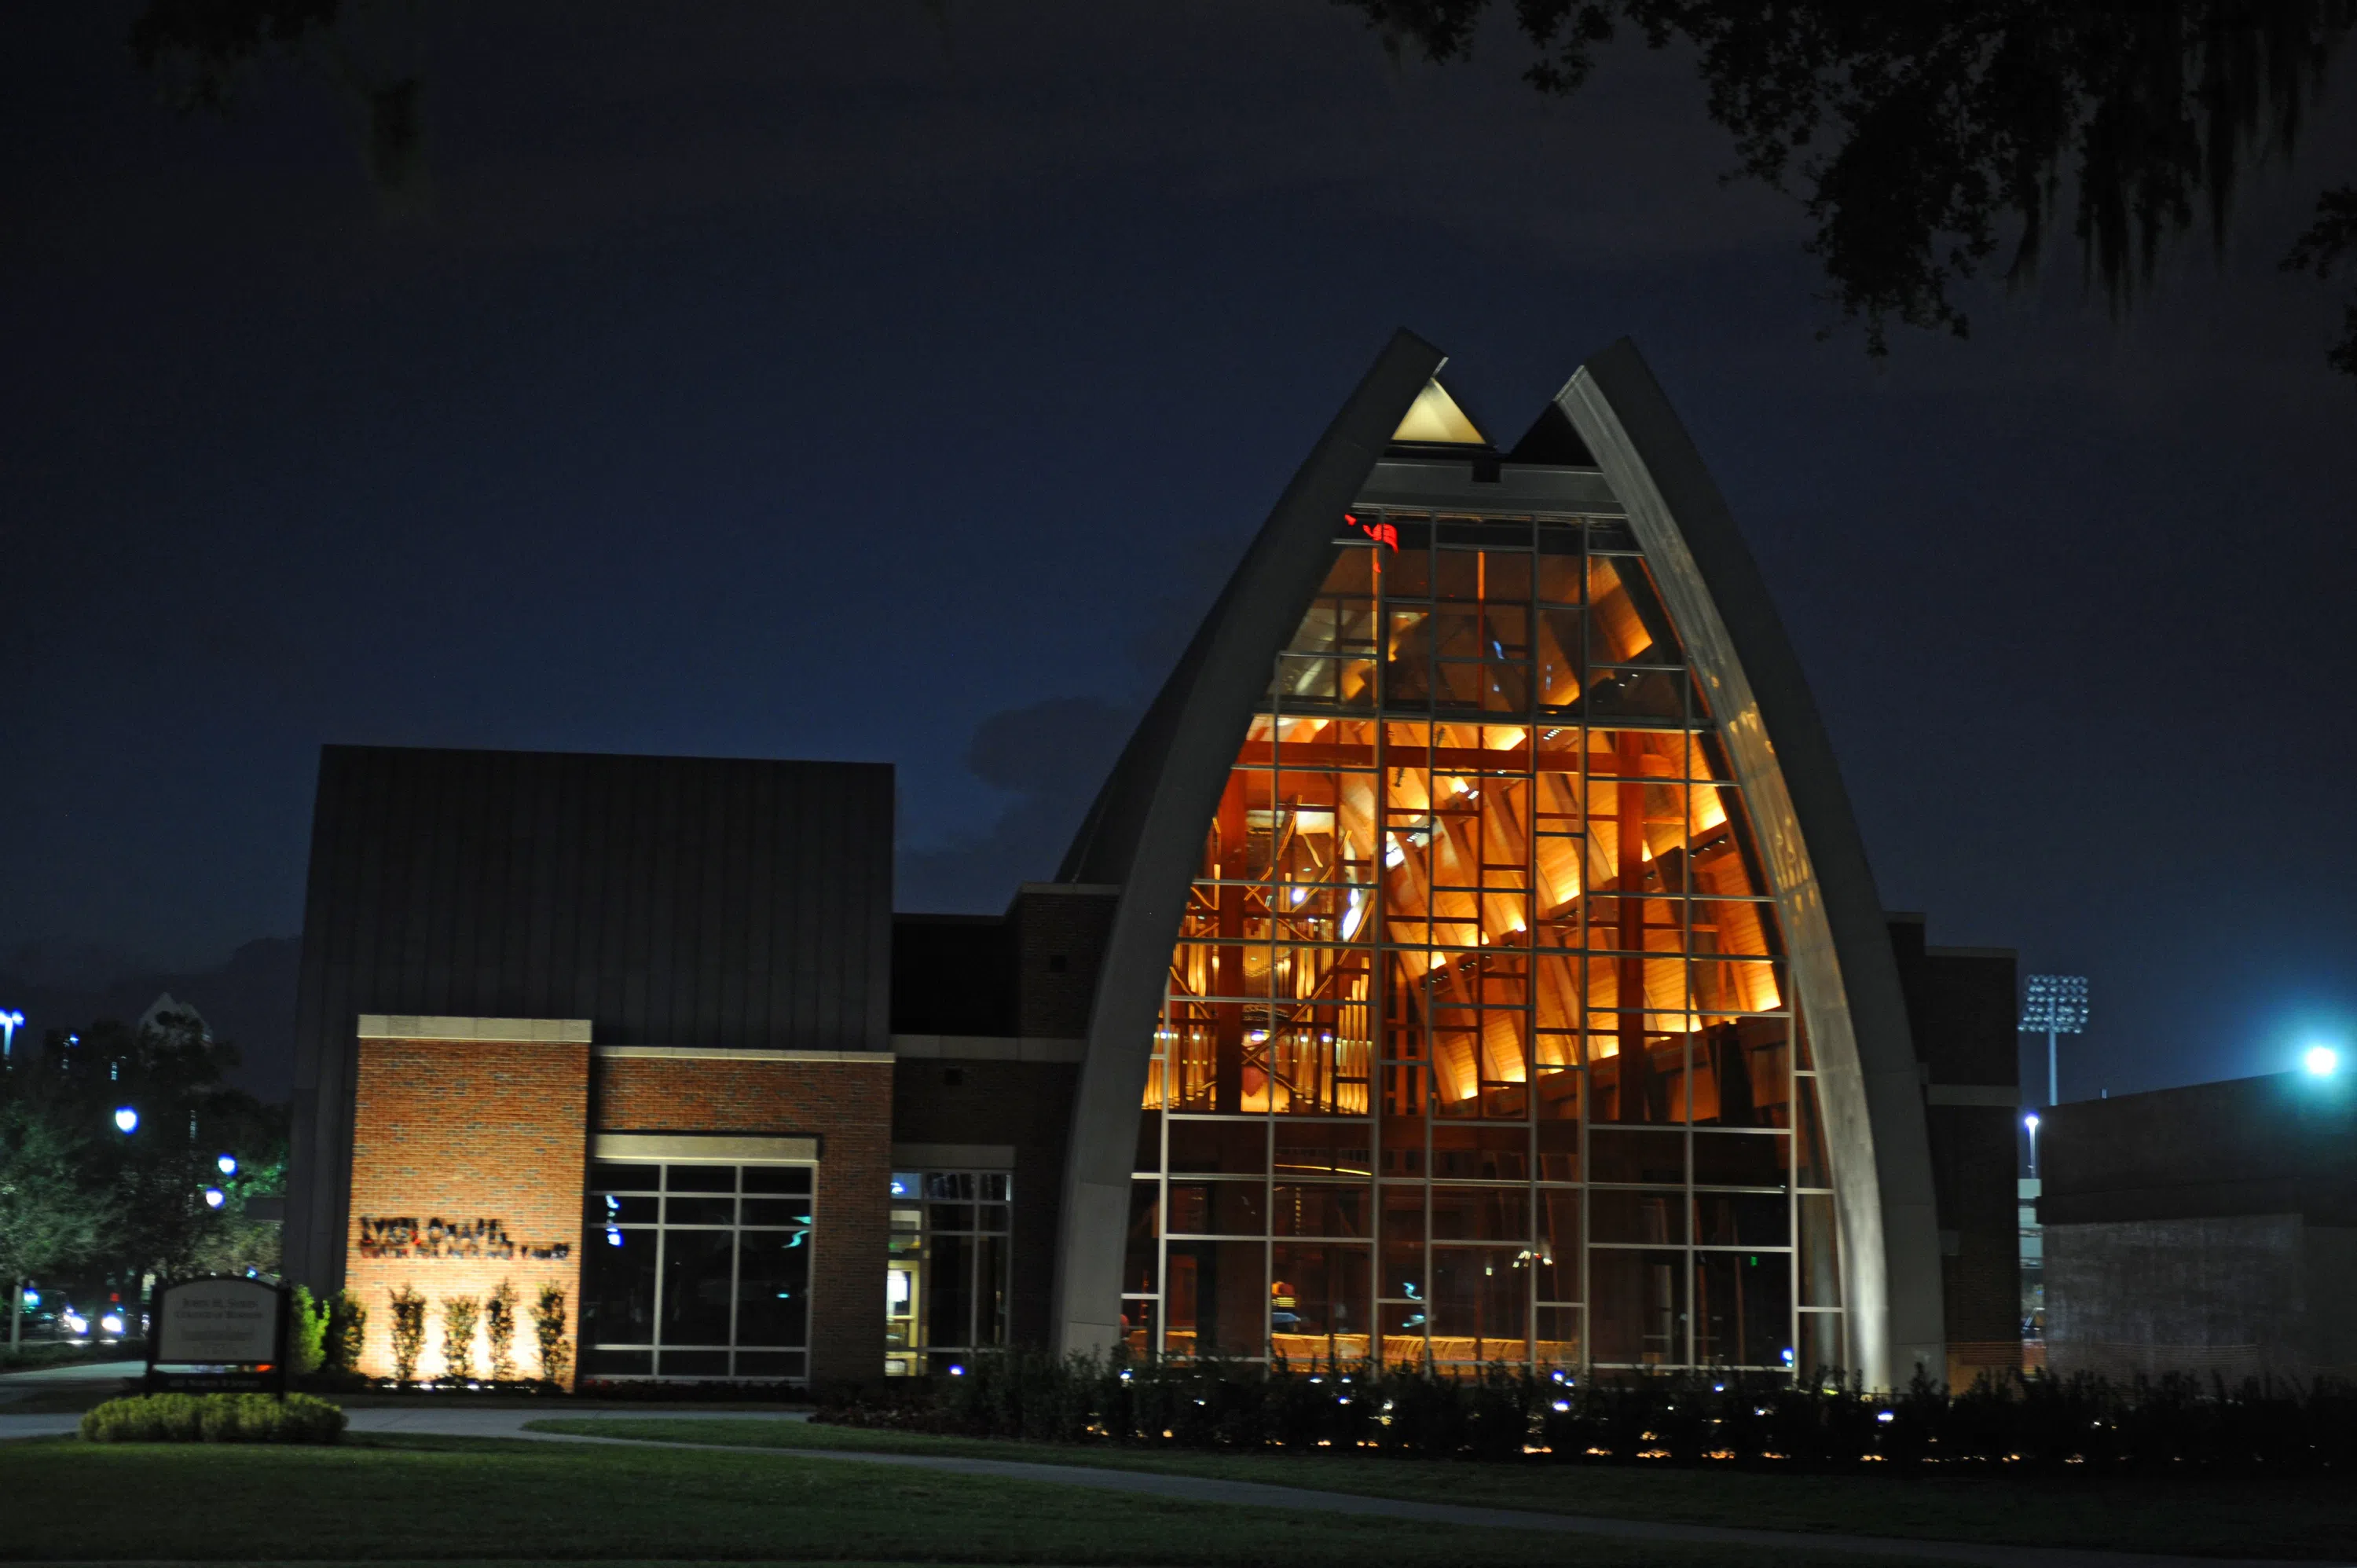 Sykes Chapel at Night